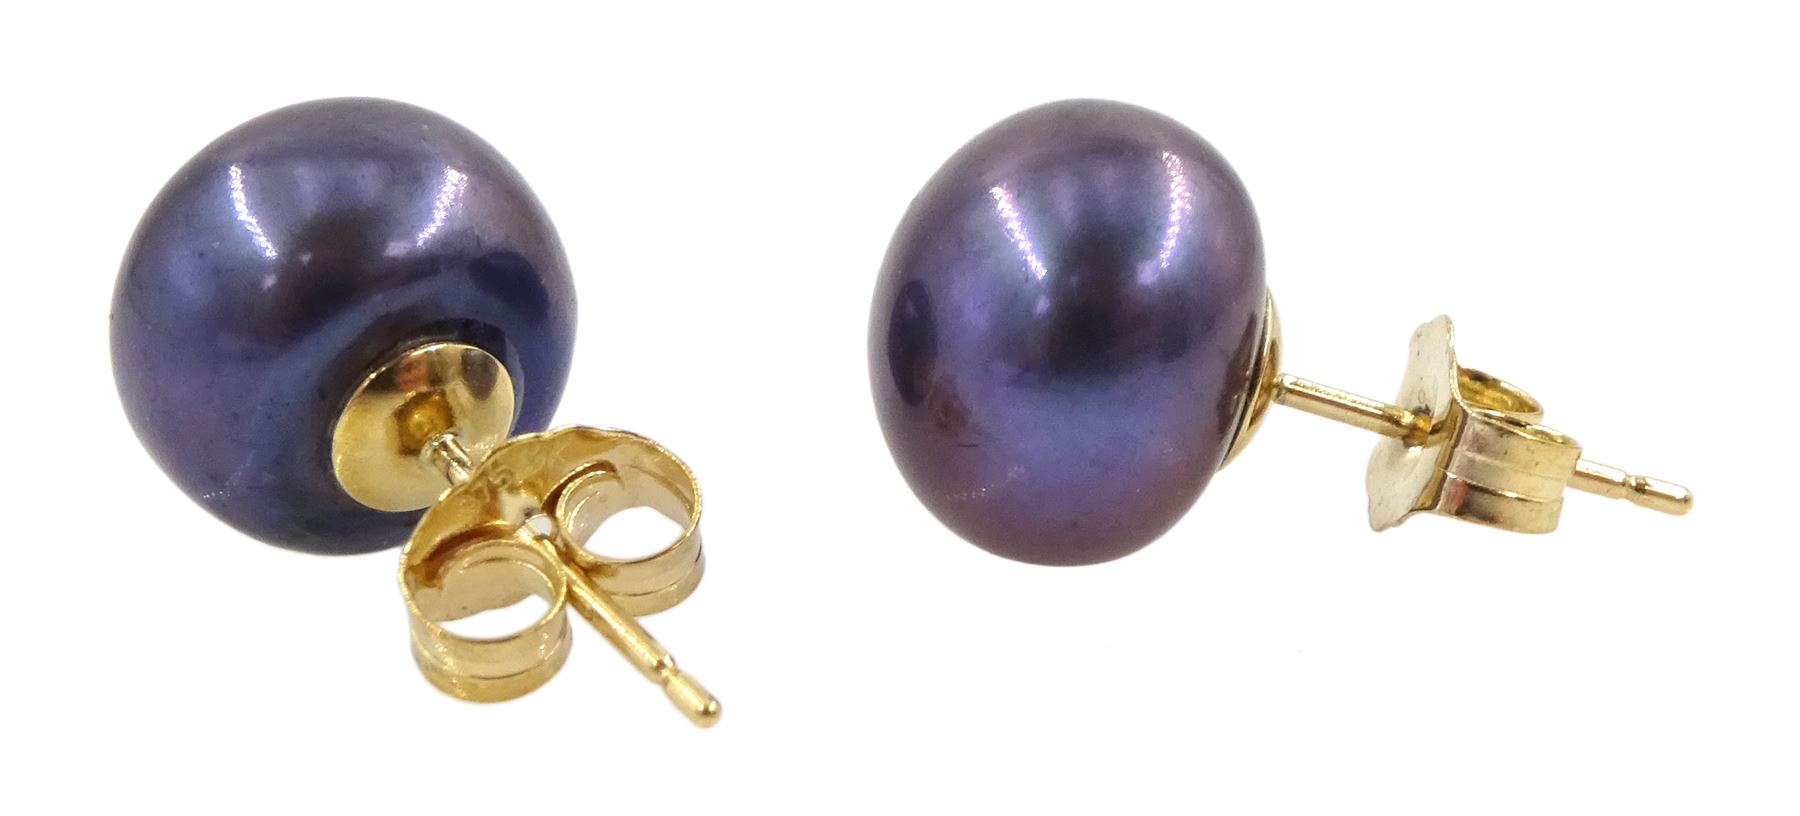 Pair of 9ct gold grey / purple pearl stud earrings - Image 2 of 2